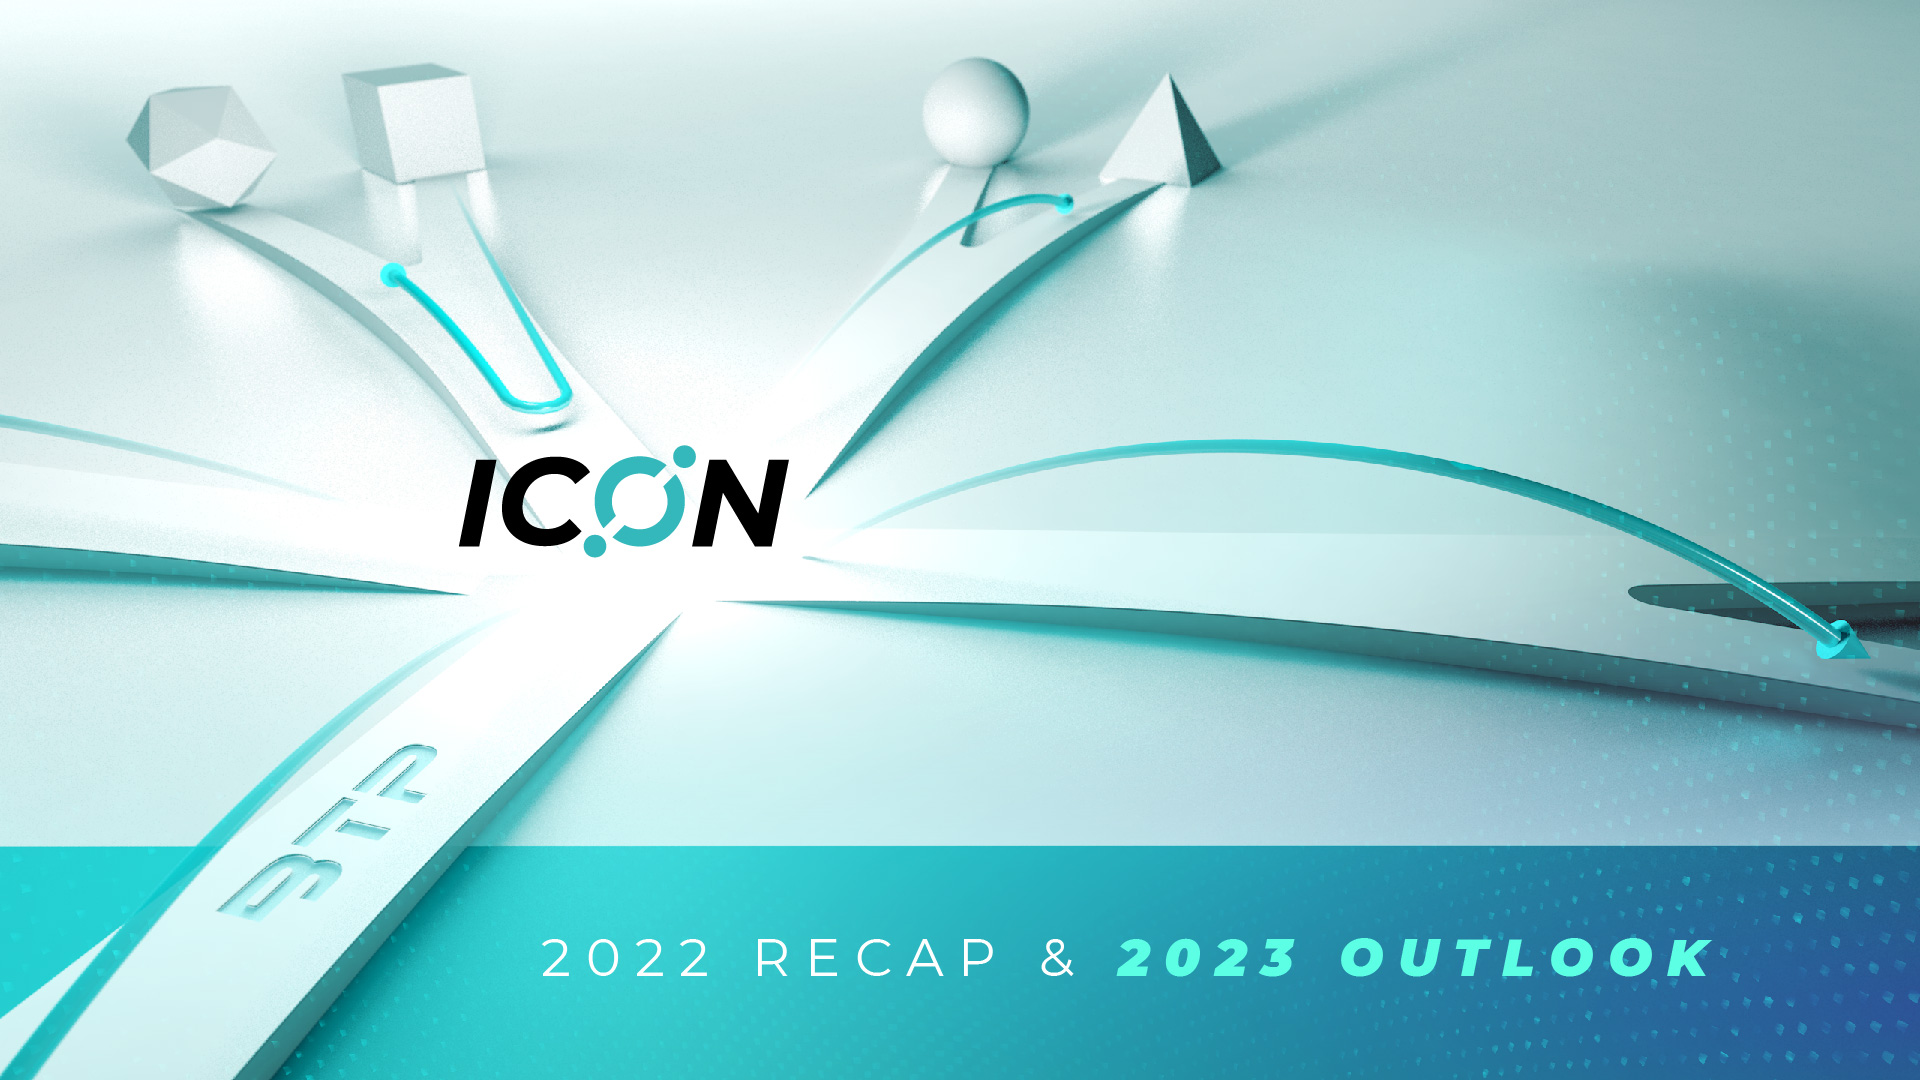 ICON 2022 Recap & 2023 Outlook